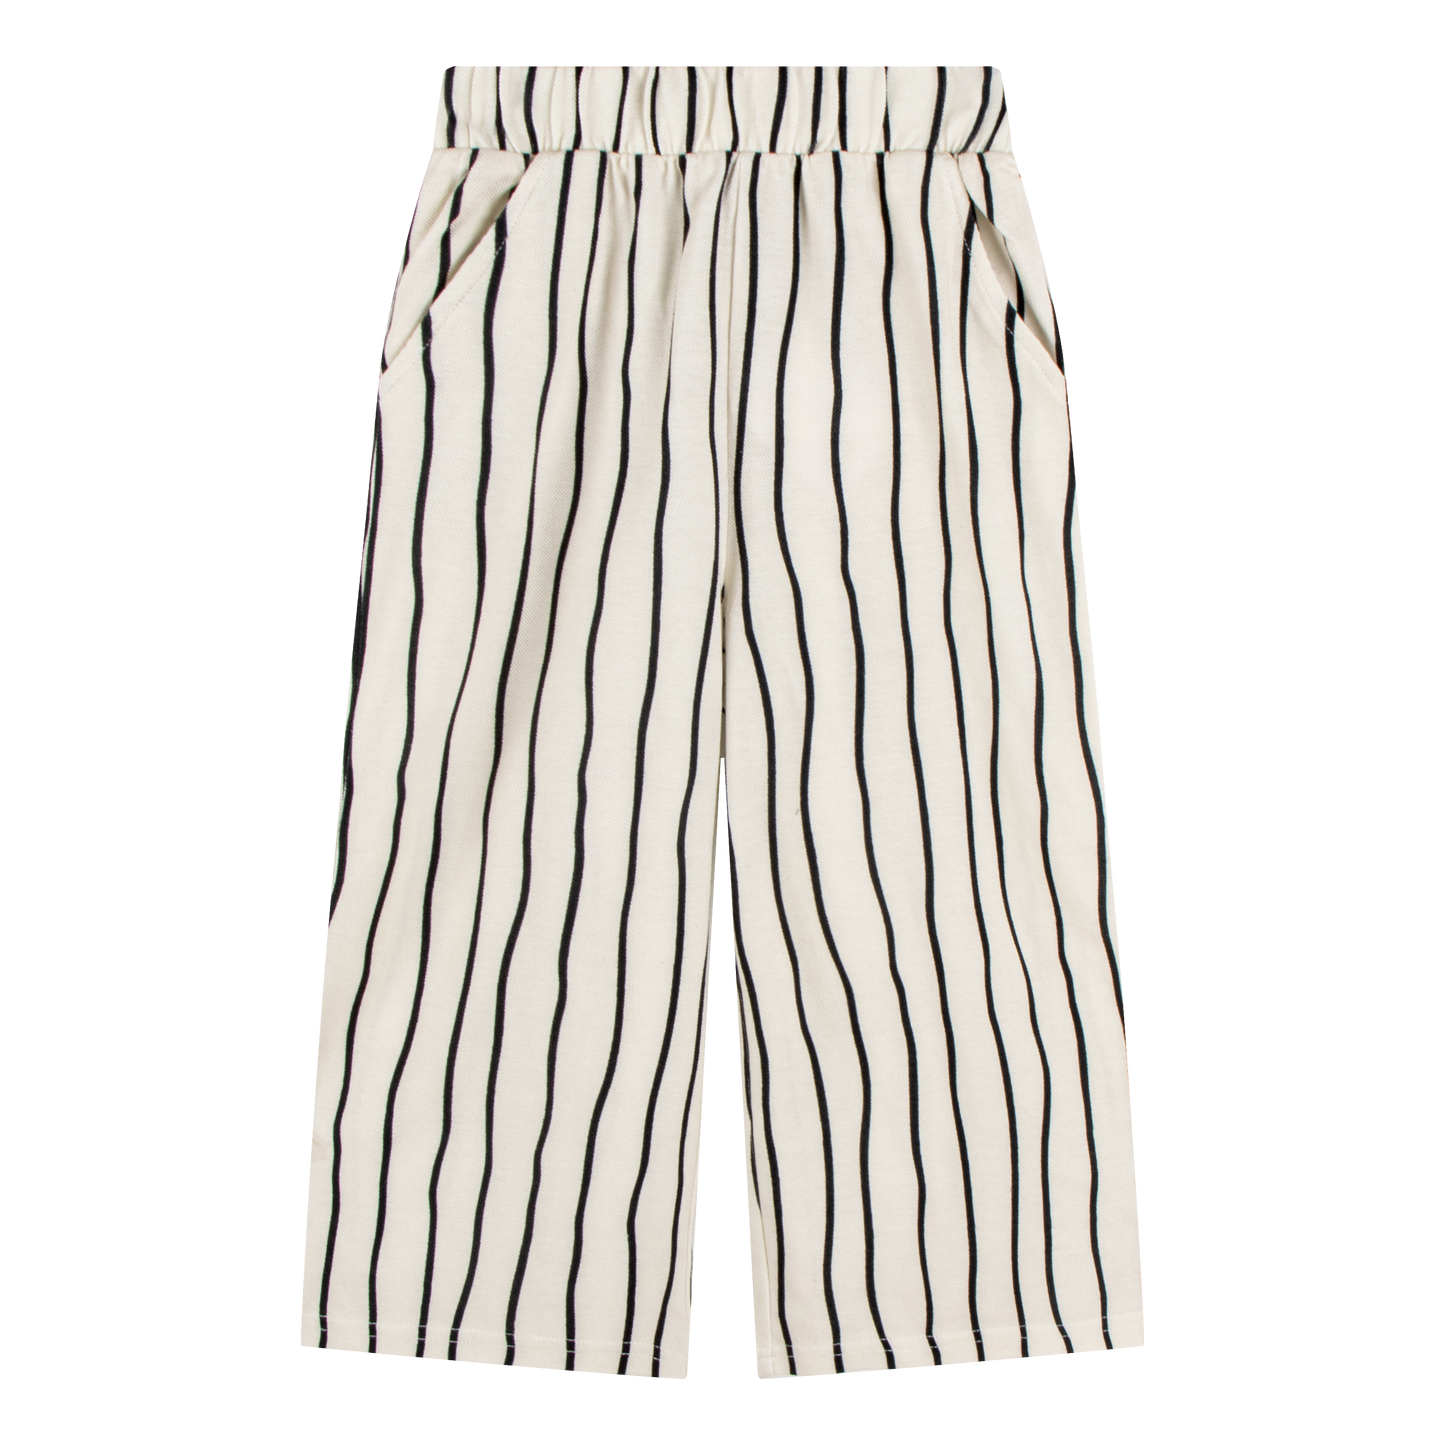 Kids Fashion Cotton Pants Vertical Striped